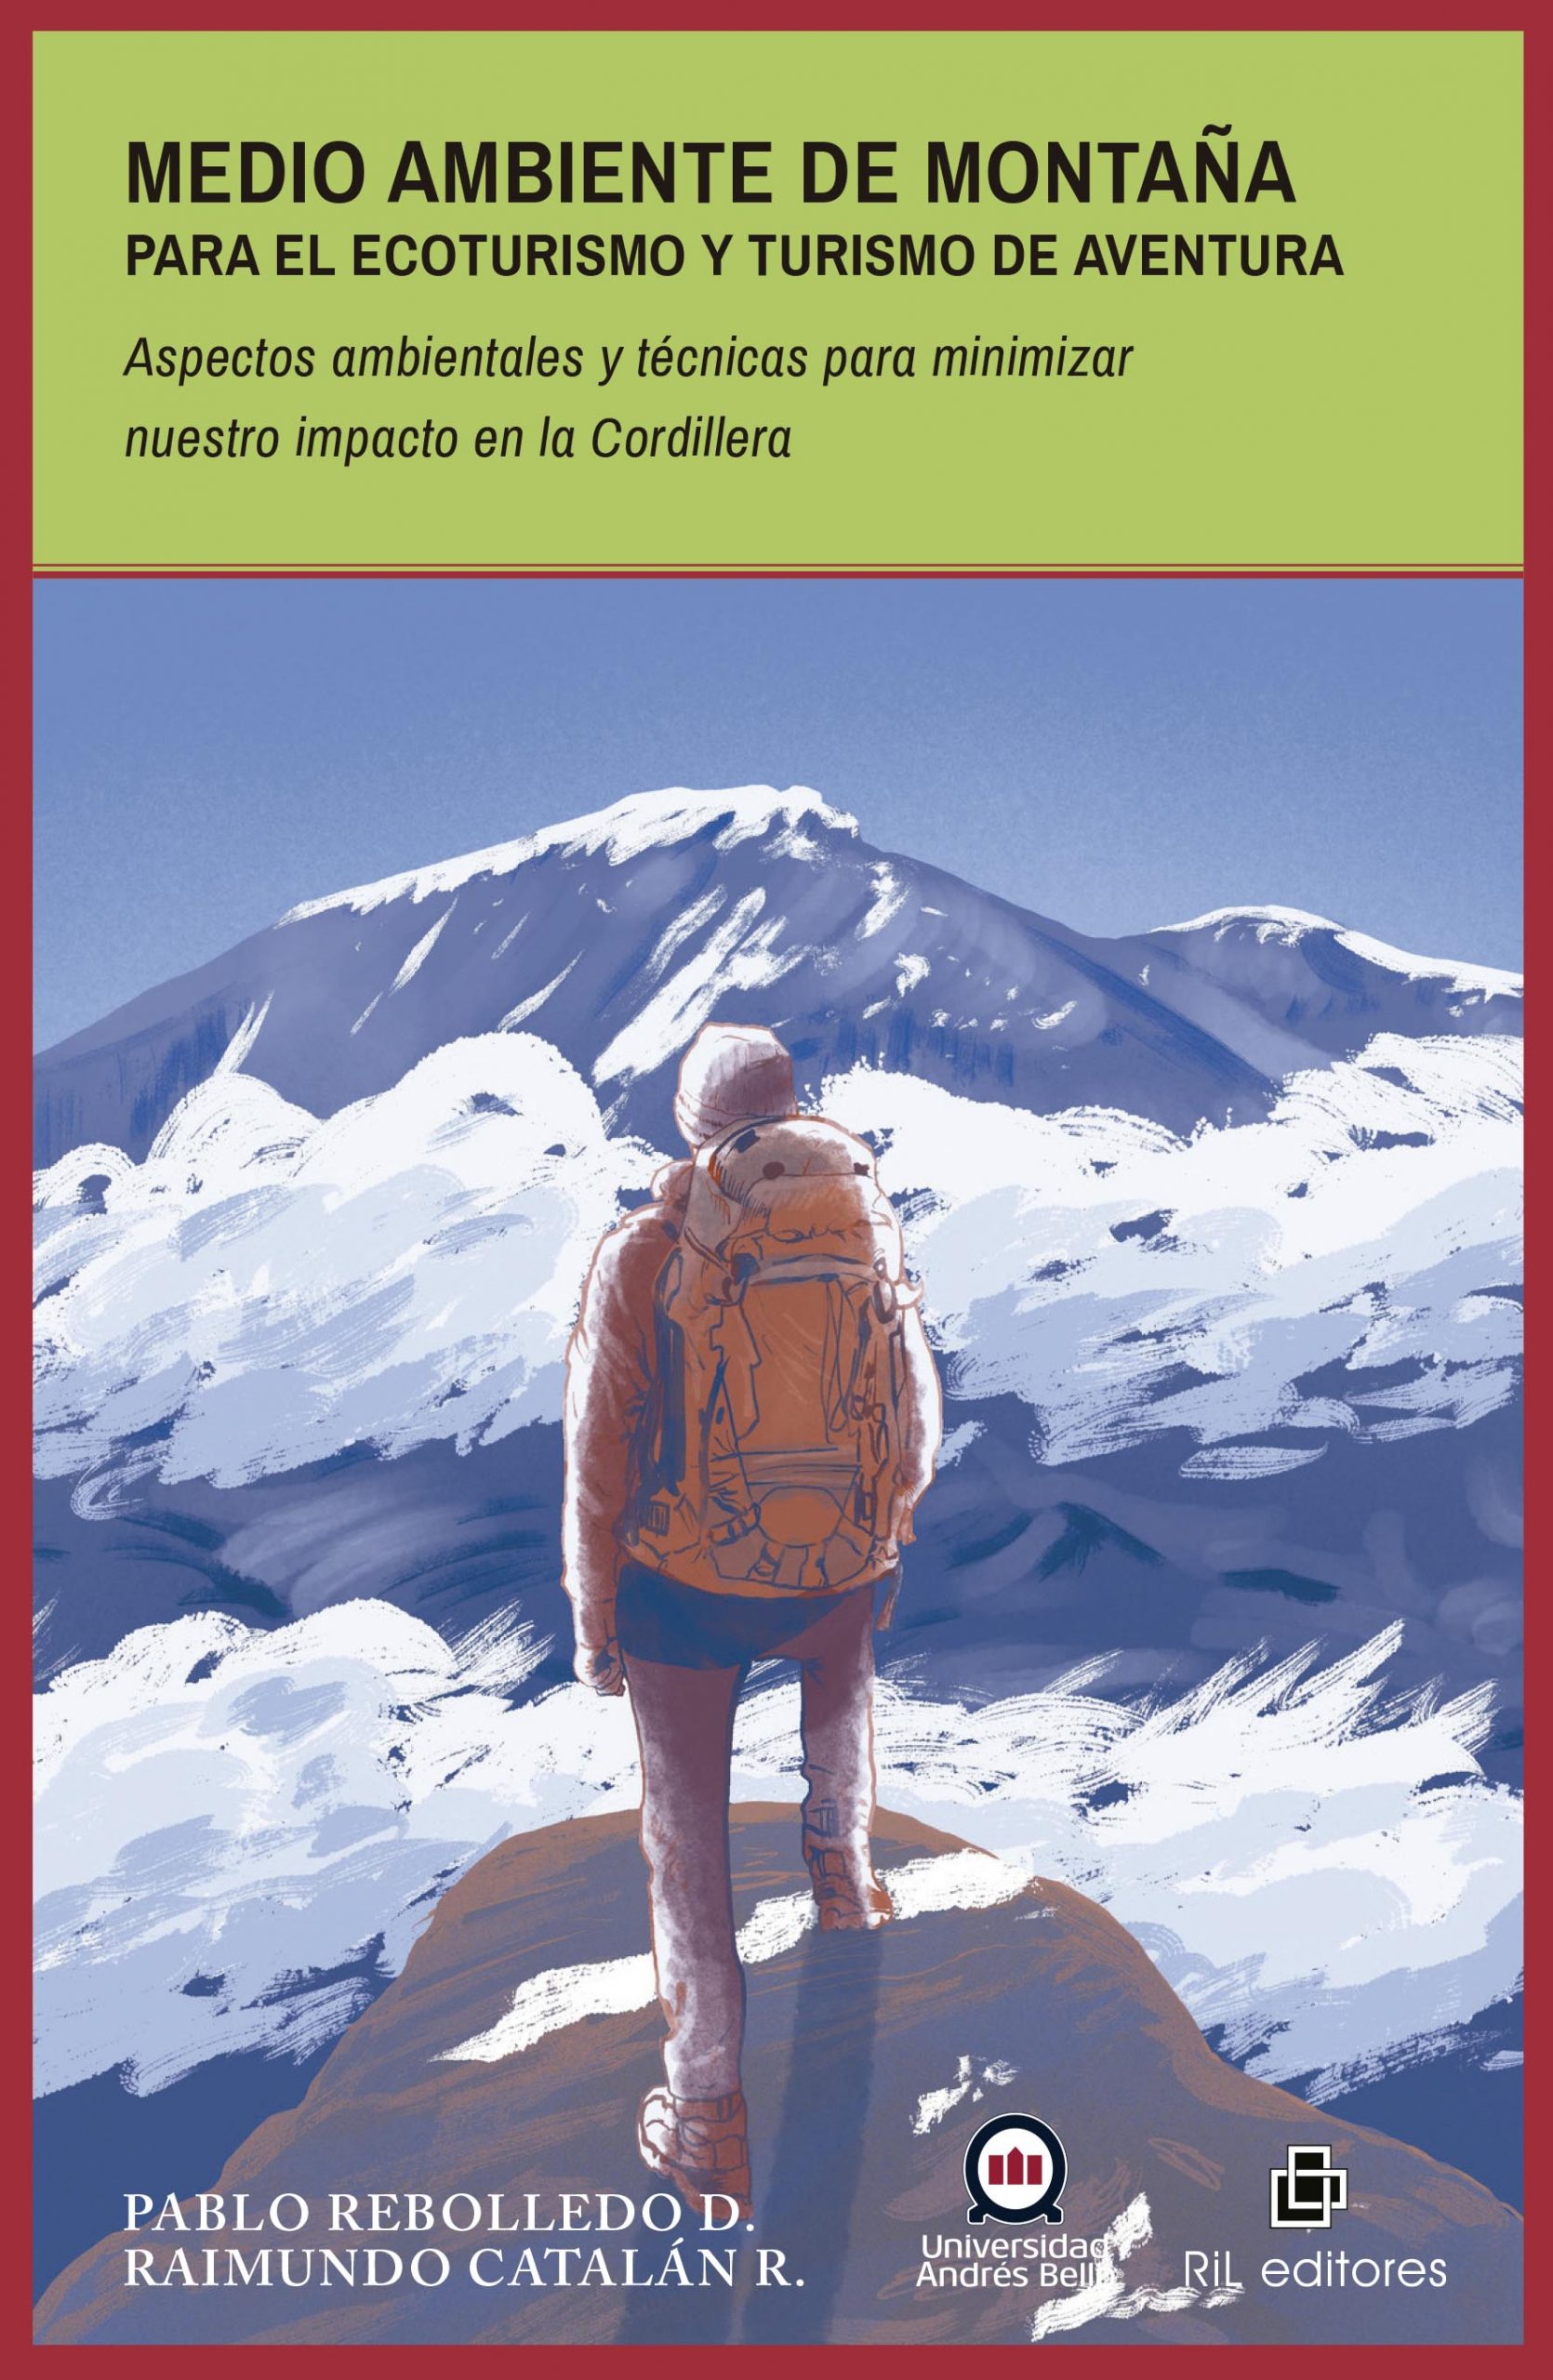 Medio ambiente de montaña para el ecoturismo y turismo de aventura. Aspectos ambientales y técnicas para minimizar nuestro impacto en la Cordillera 1